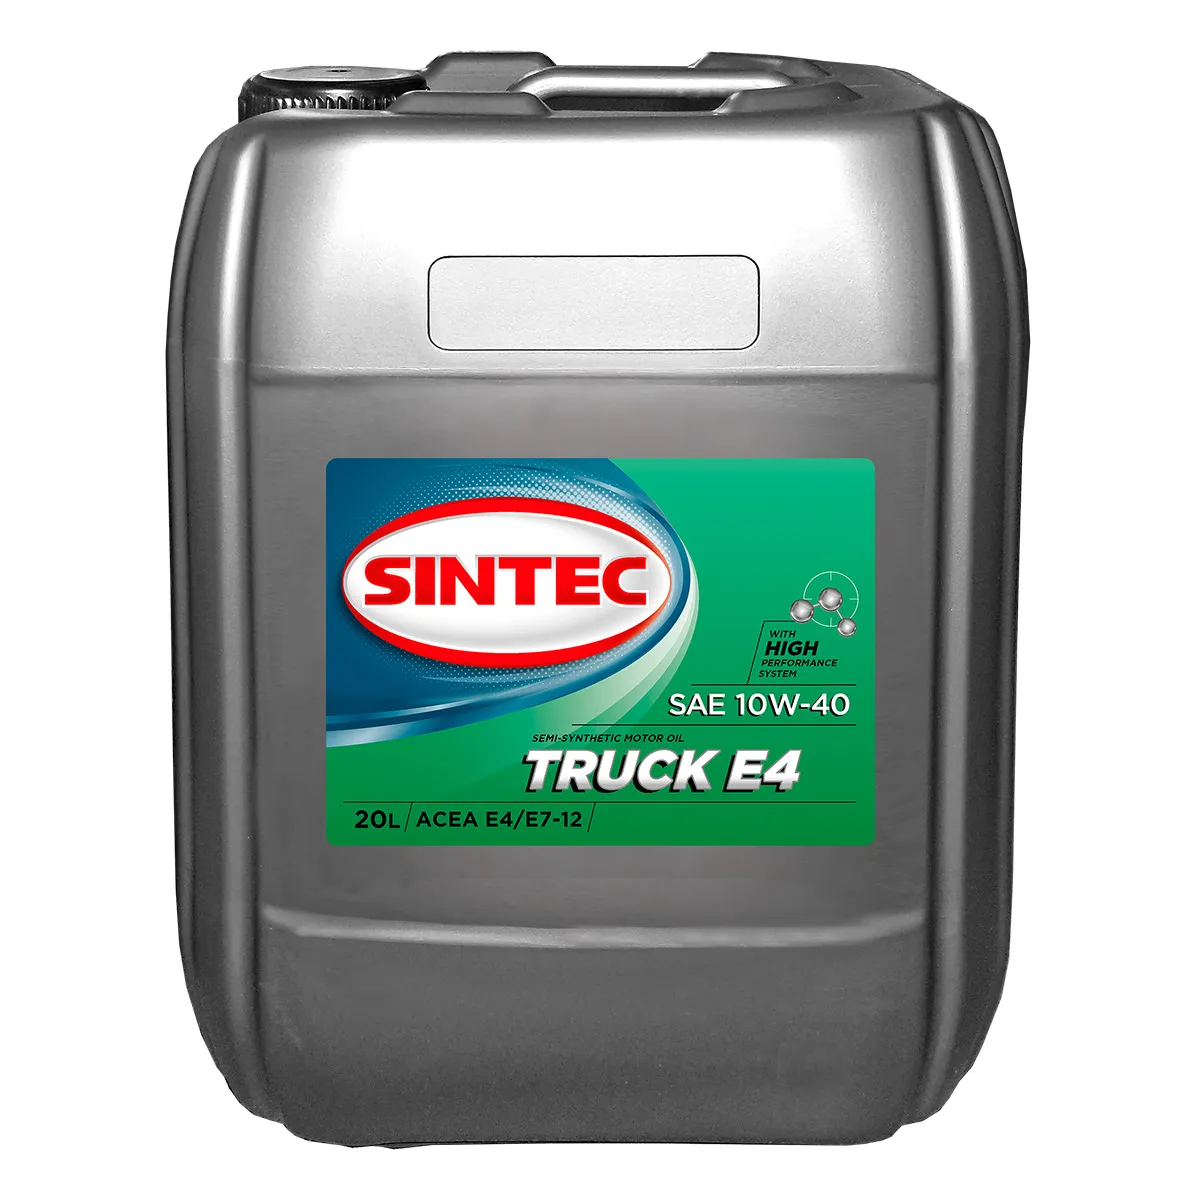 SINTEC TRUCK SAE 10W-40 ACEA E4/E7 Масла для коммерческой техники: описание, применение, свойства, где
							купить